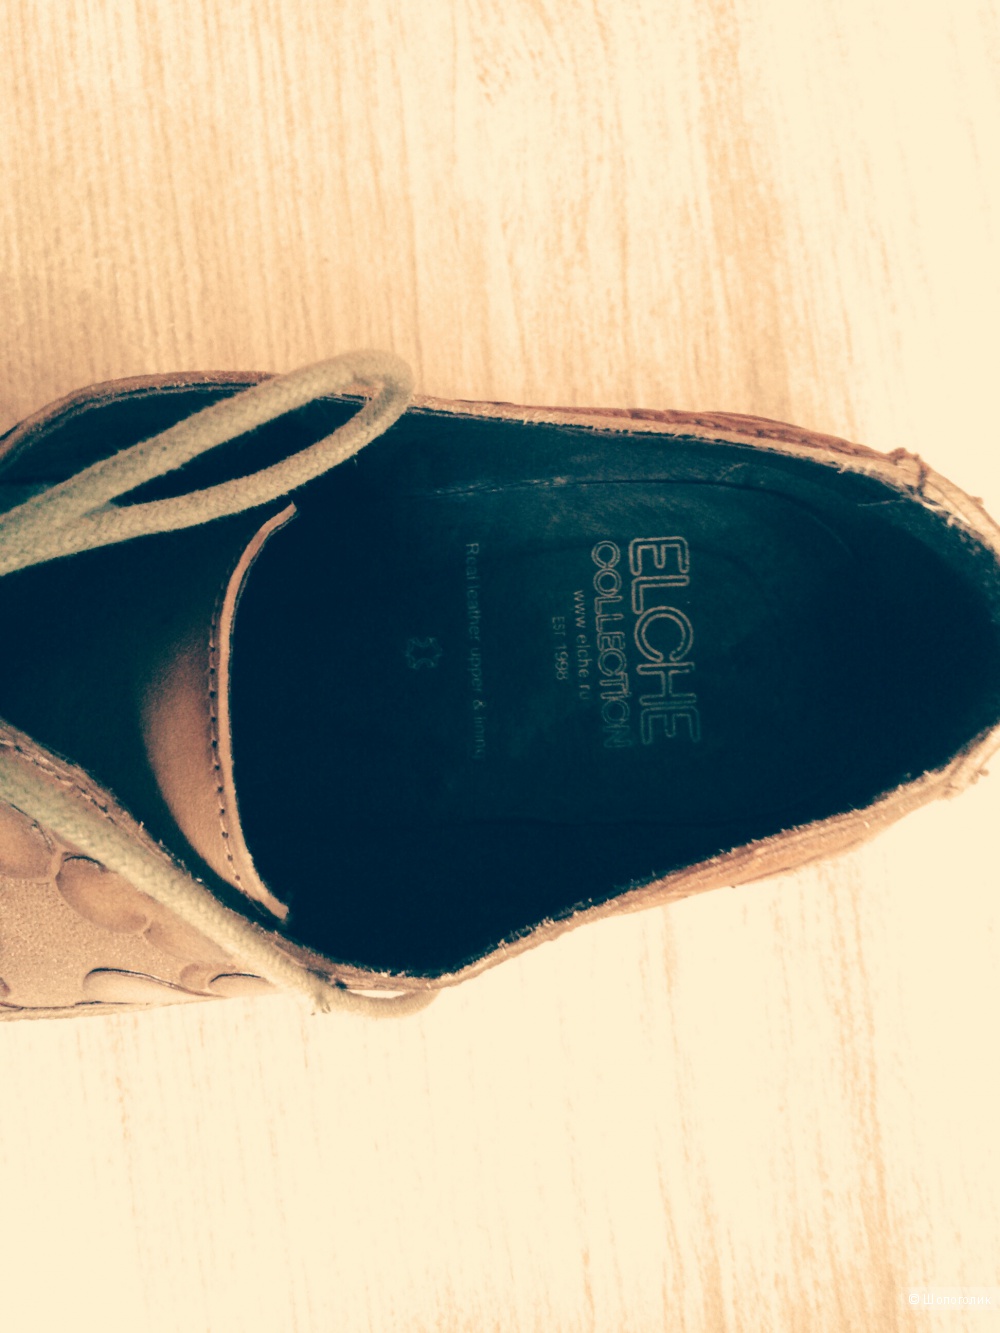 Стильные ботинки из натуральной кожи бренда Elche 39-го размера